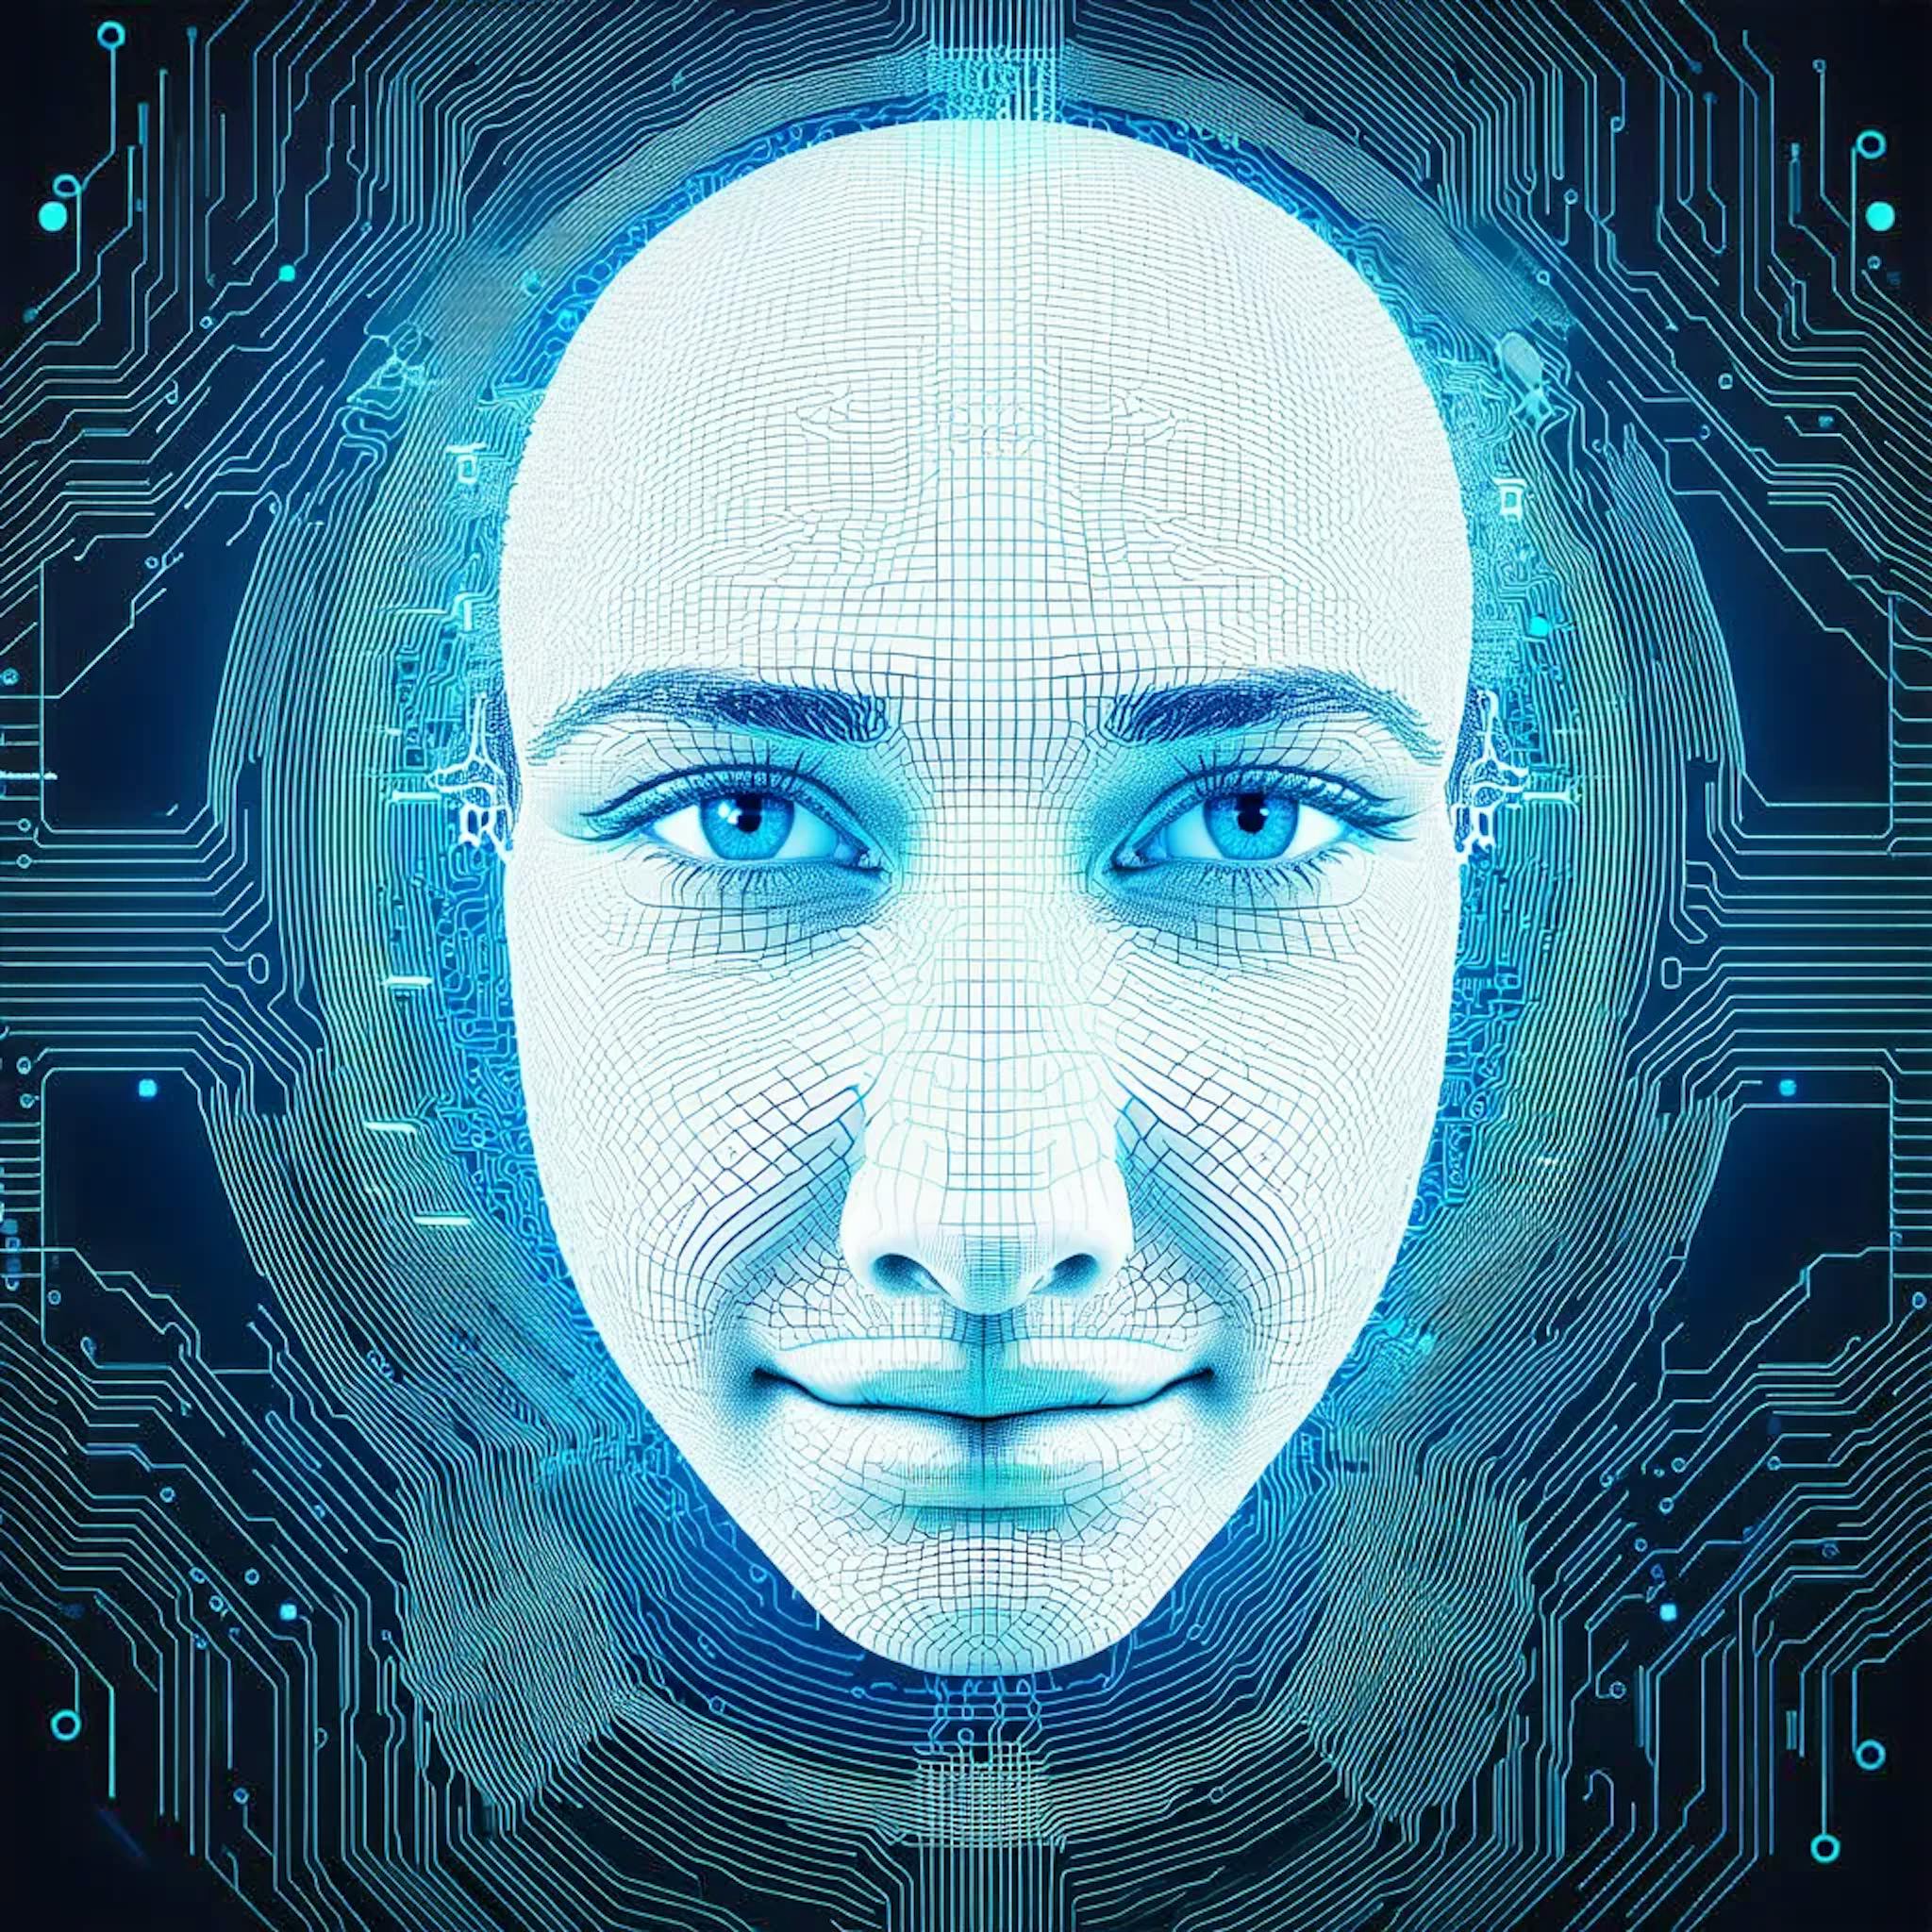 featured image - "La IA puede mejorar los procesos de recopilación, análisis, predicción y evaluación de datos"